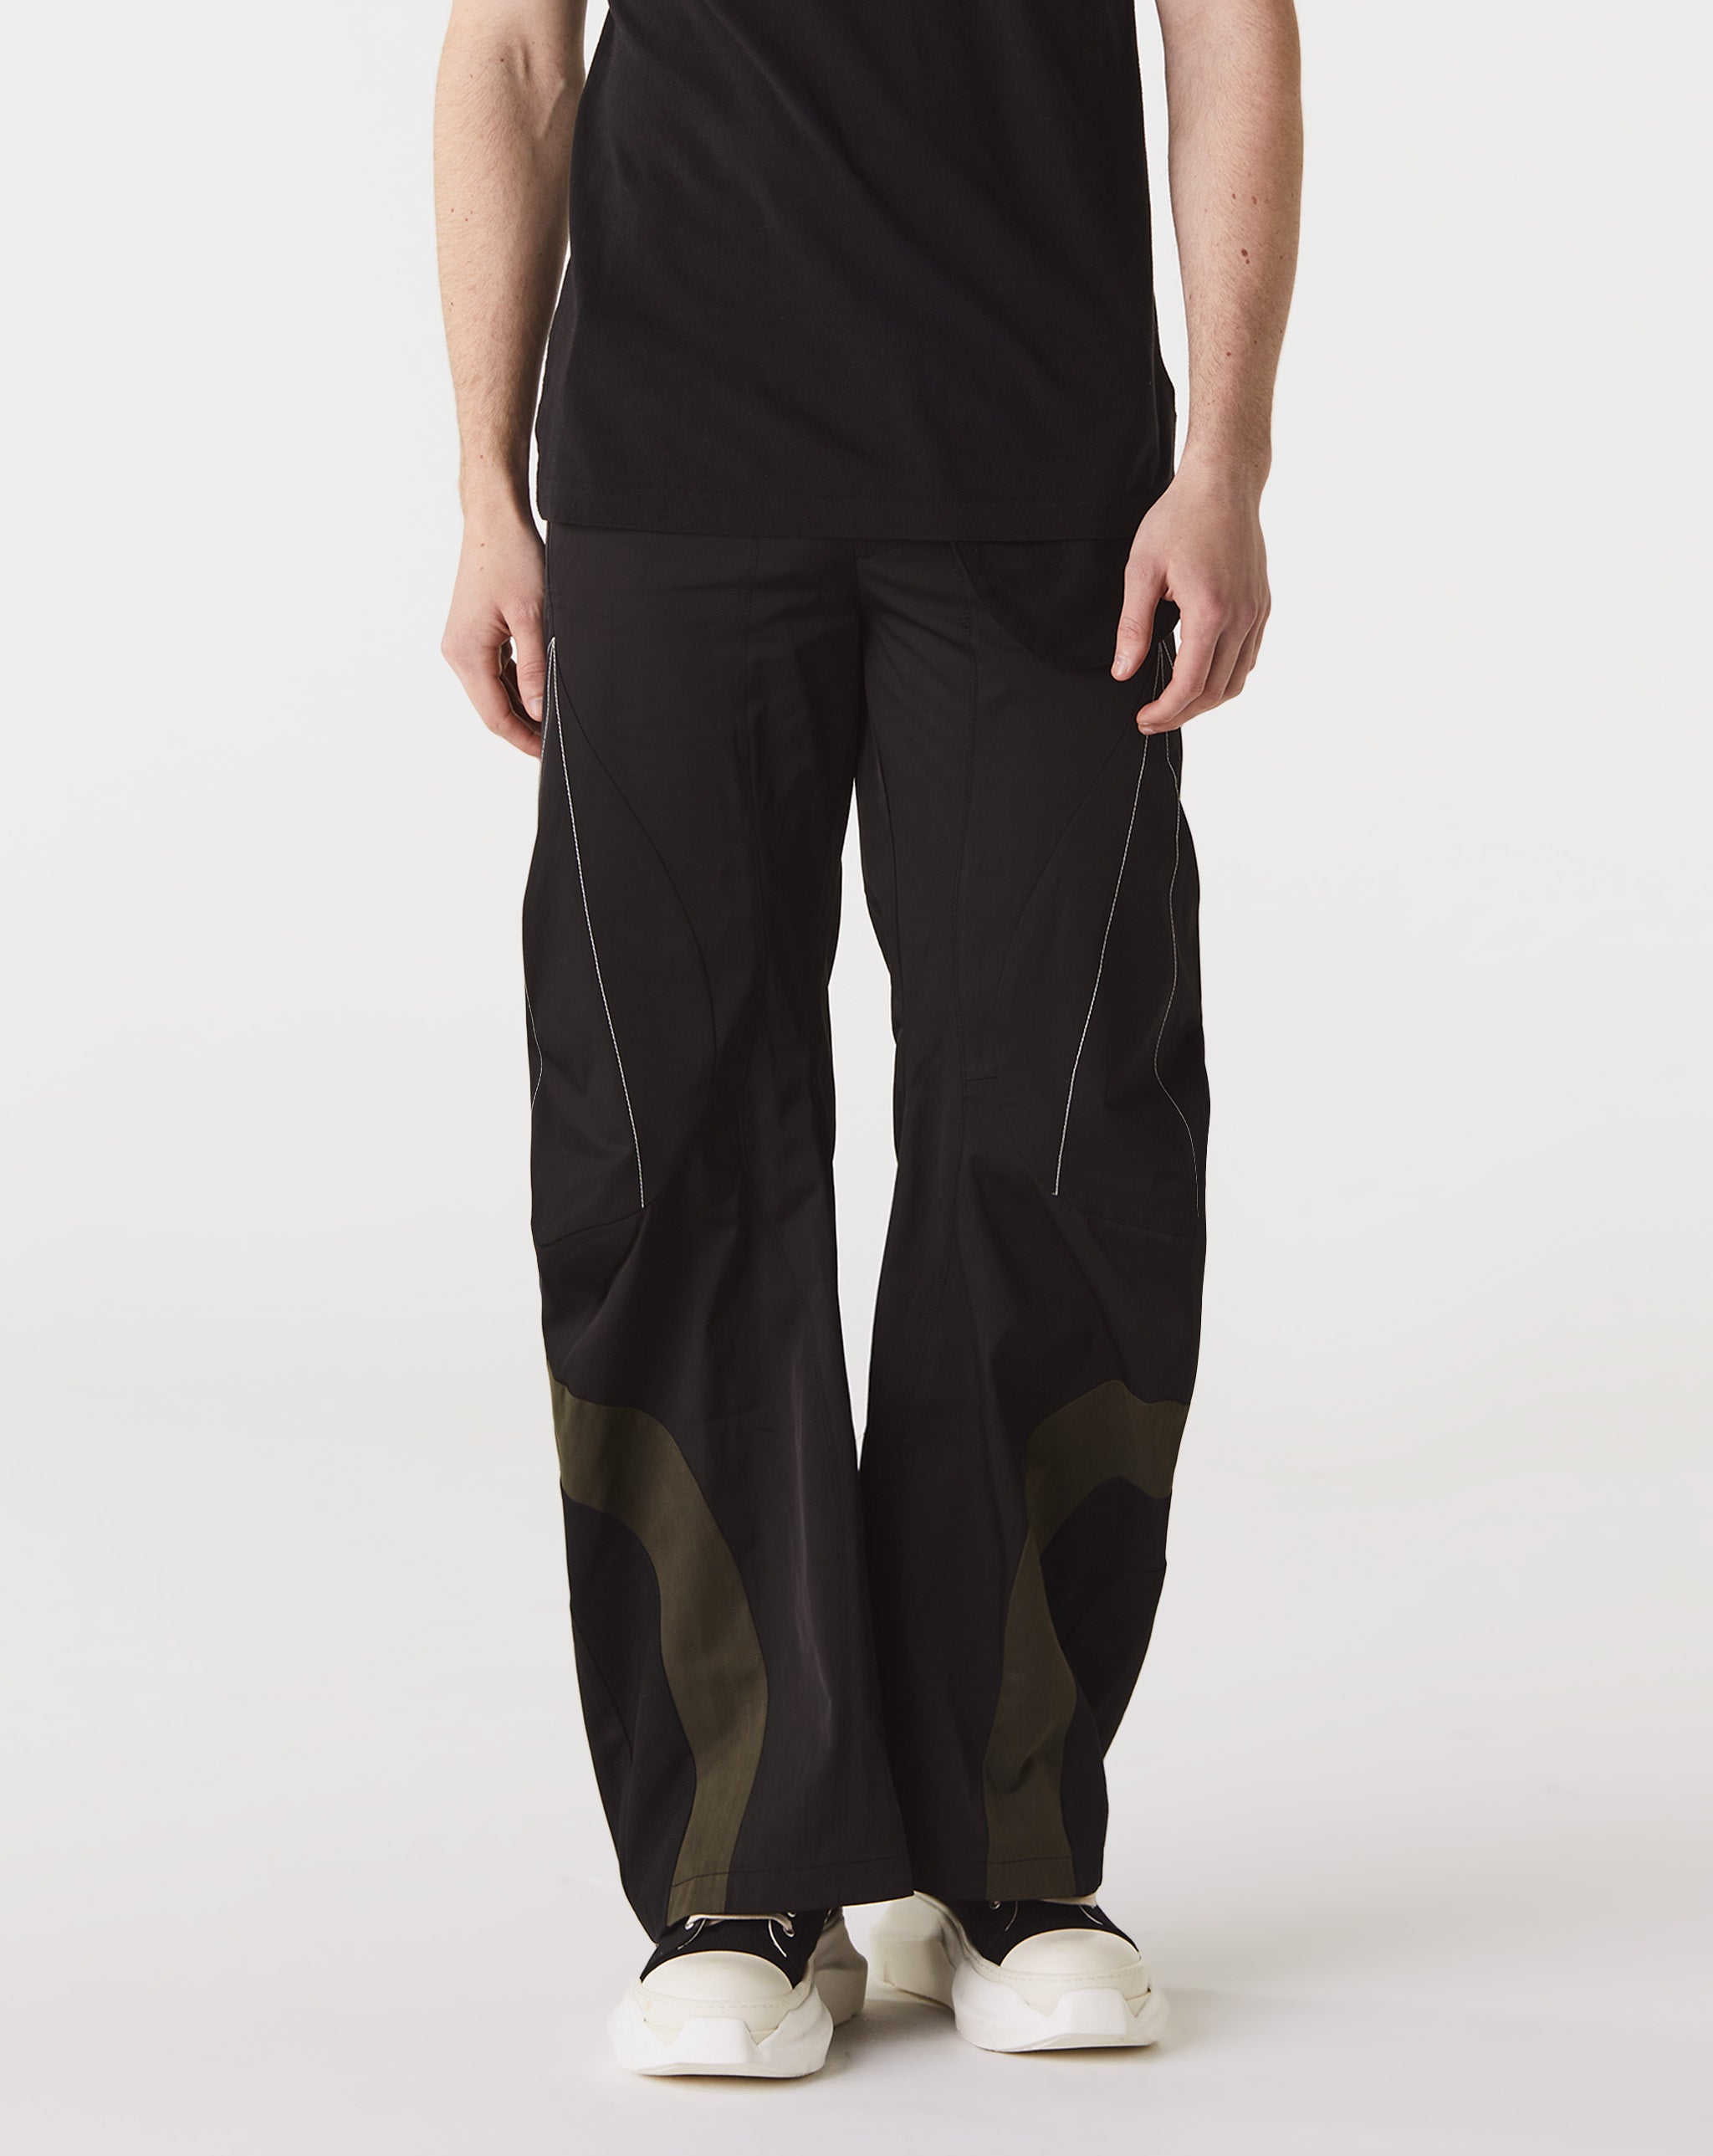 FFFPOSTALSERVICE Articulated Waist Bag Trousers V1  - Cheap Urlfreeze Jordan outlet